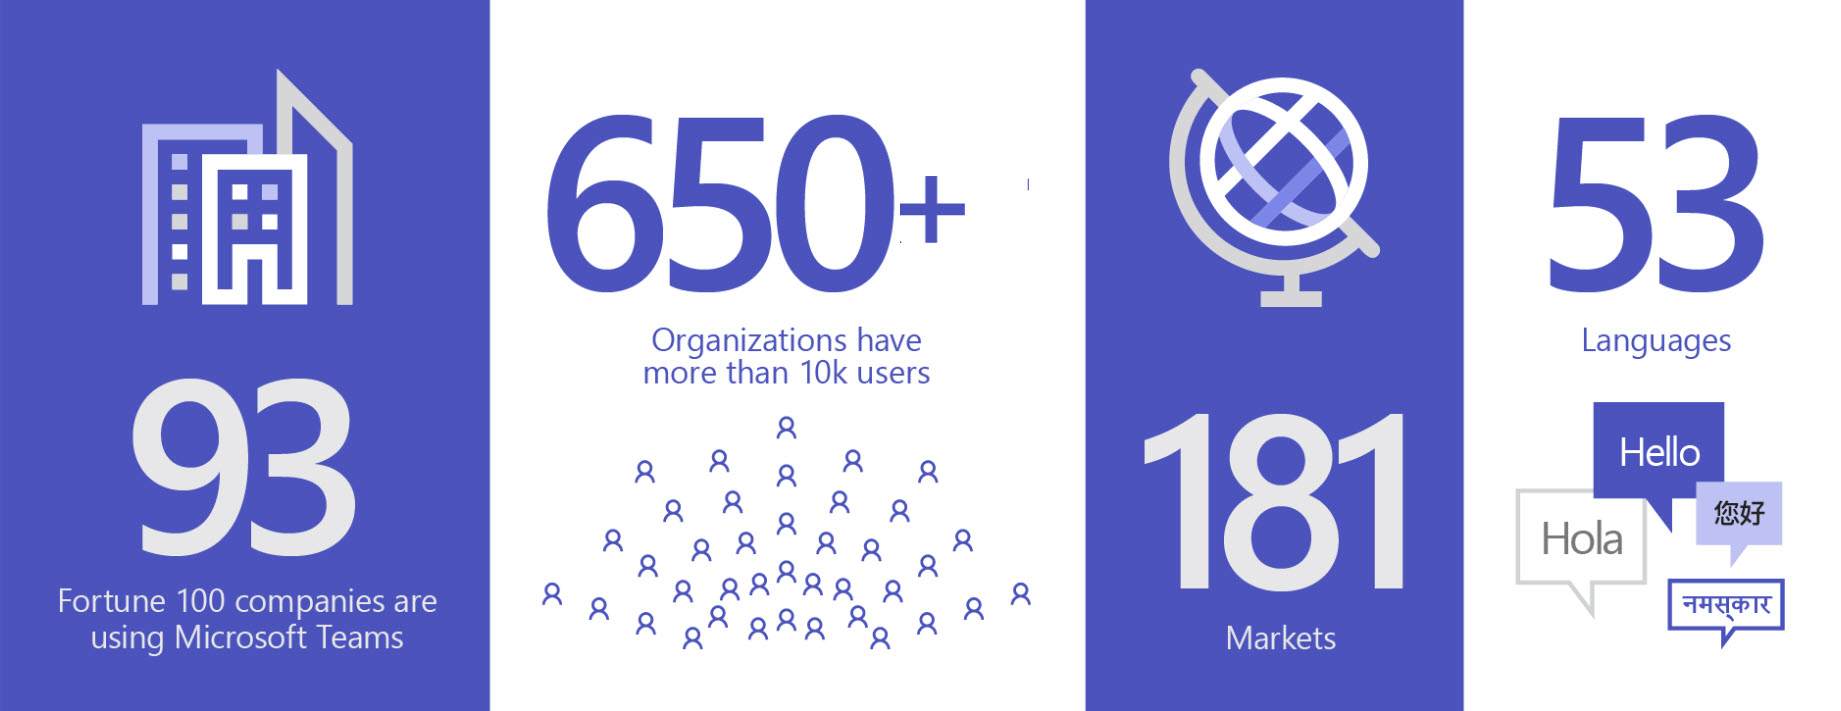 Immagine che mostra 93 organizzazioni che usano Teams, oltre 650 organizzazioni hanno più di 10.000 utenti, in 181 mercati e 53 lingue.